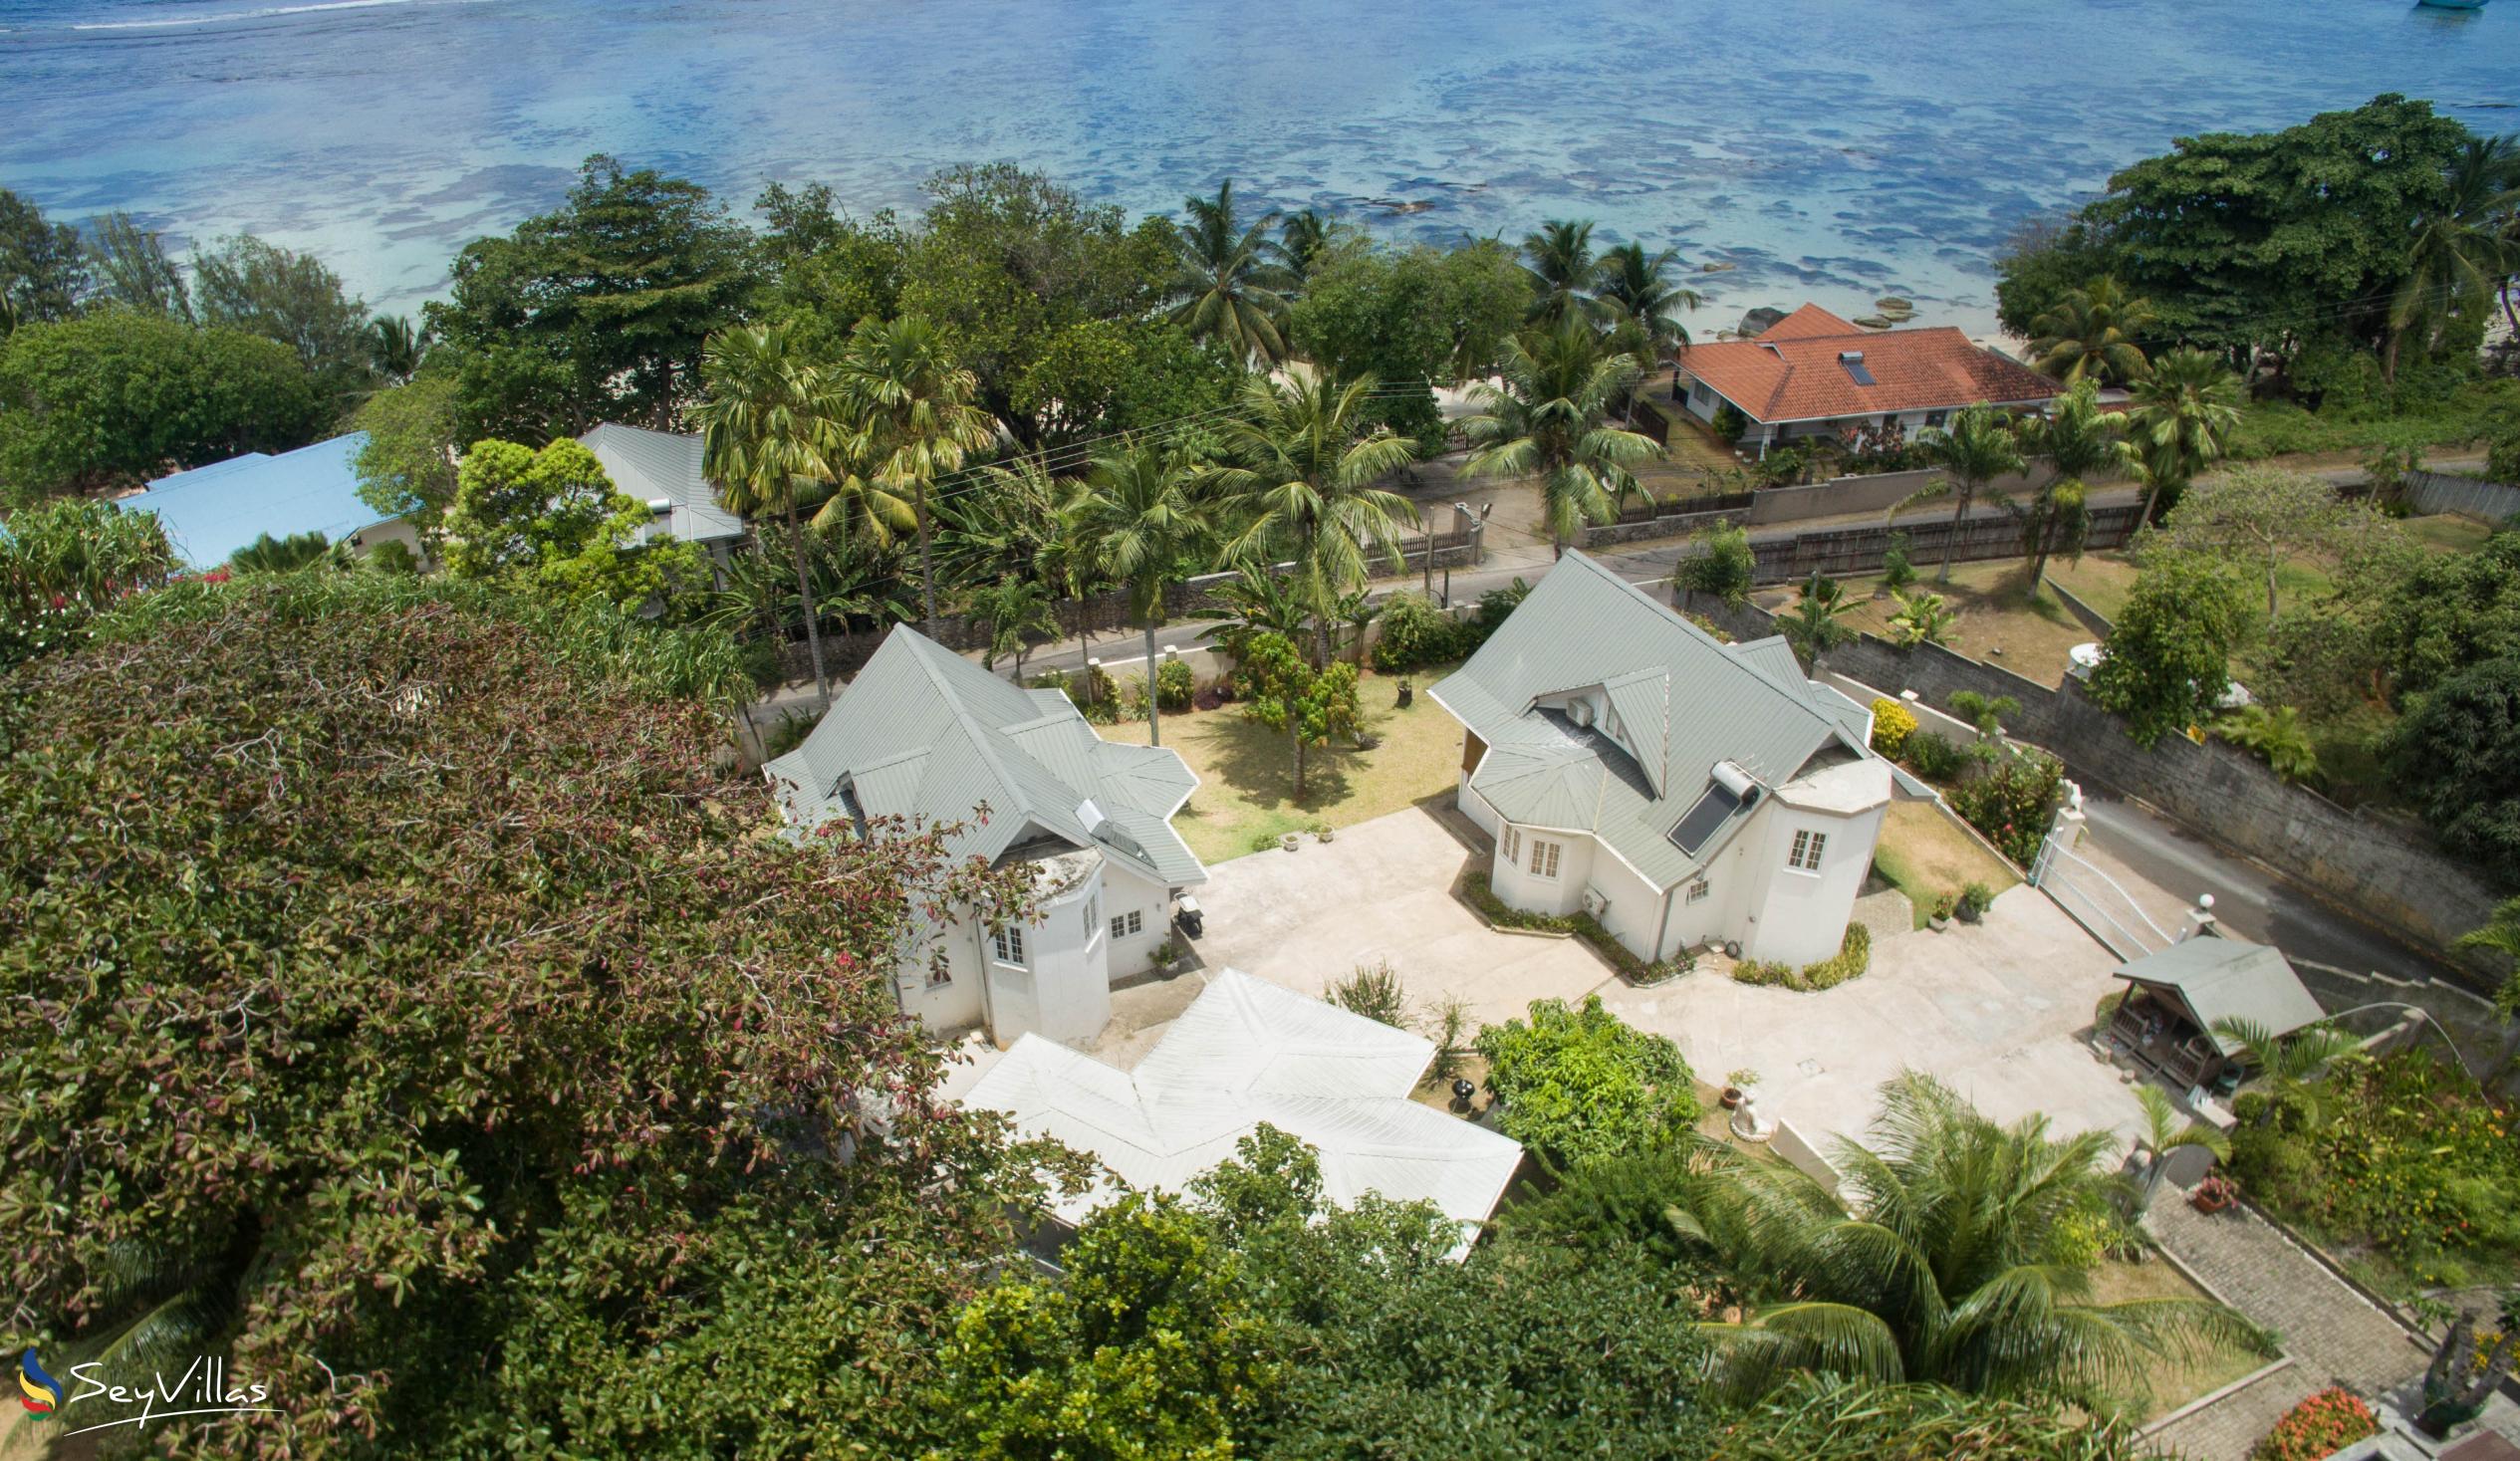 Foto 34: Le Domaine de Bacova - Aussenbereich - Mahé (Seychellen)